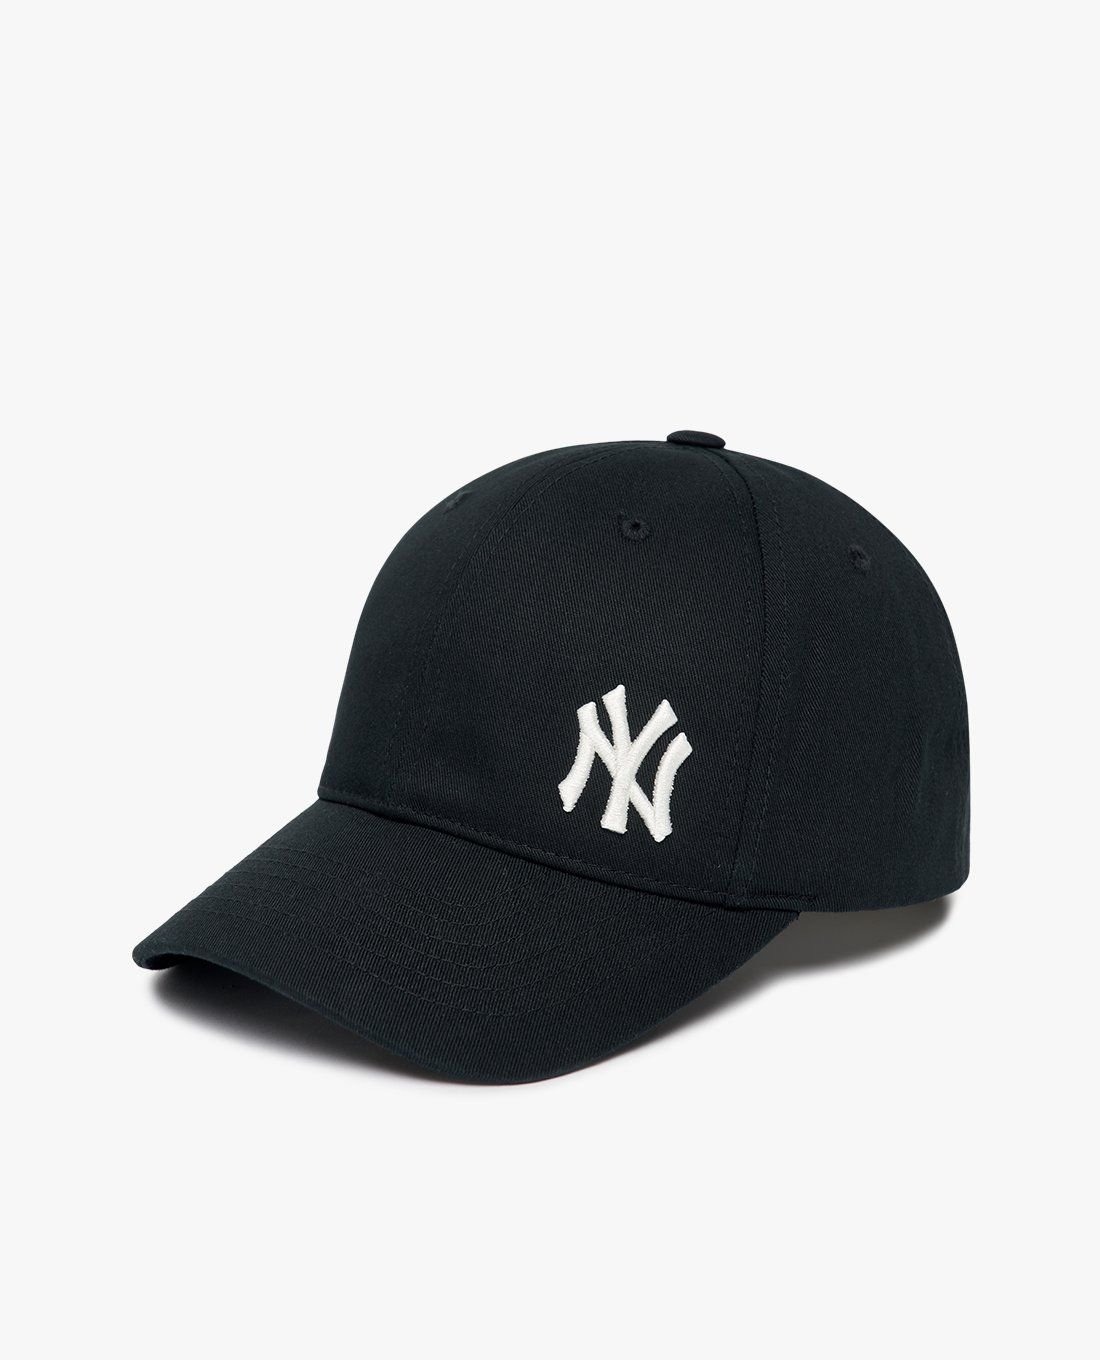 Phụ Kiện Chính Hãng - Mũ Nón Lưỡi Trai MLB Logo NY Lệch 'Black' - 3ACPIJ01N